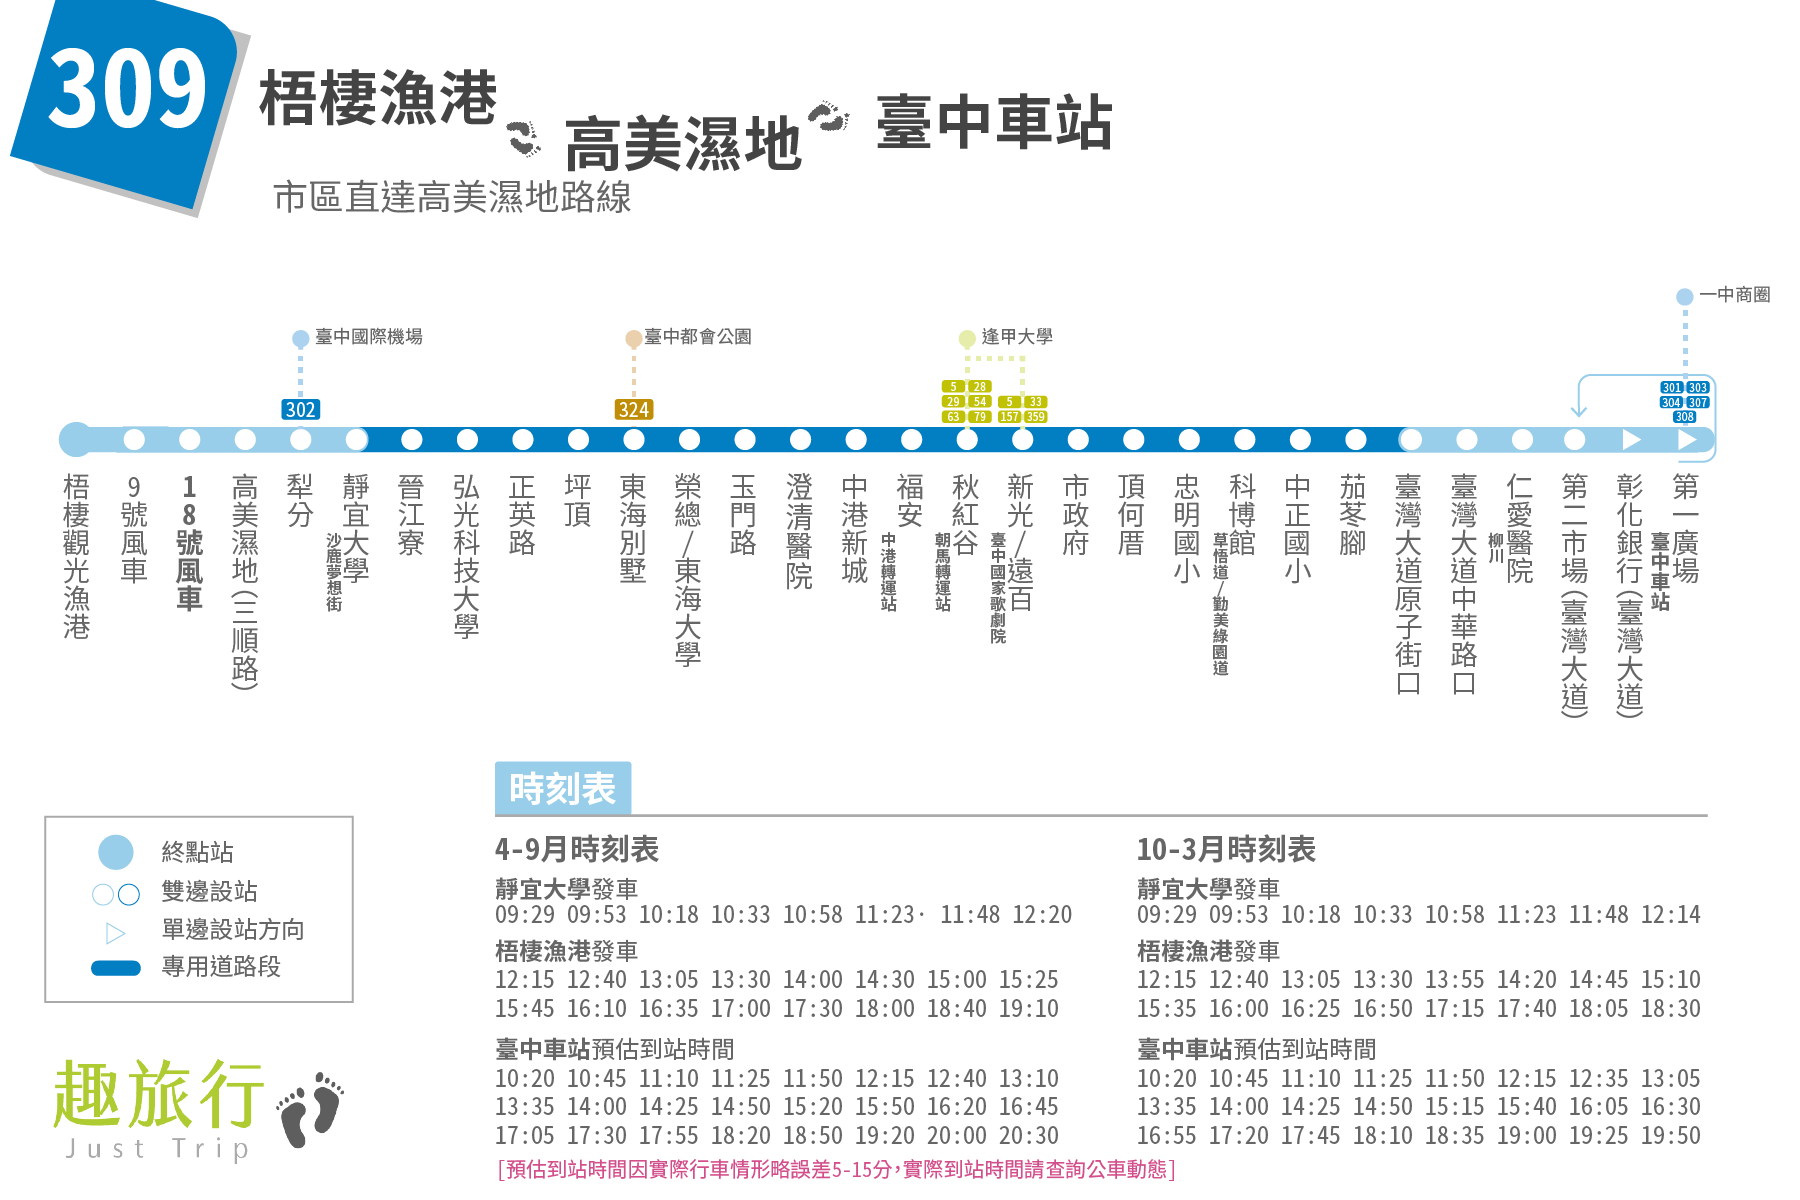 台中市公車 309路 路線圖、時刻表